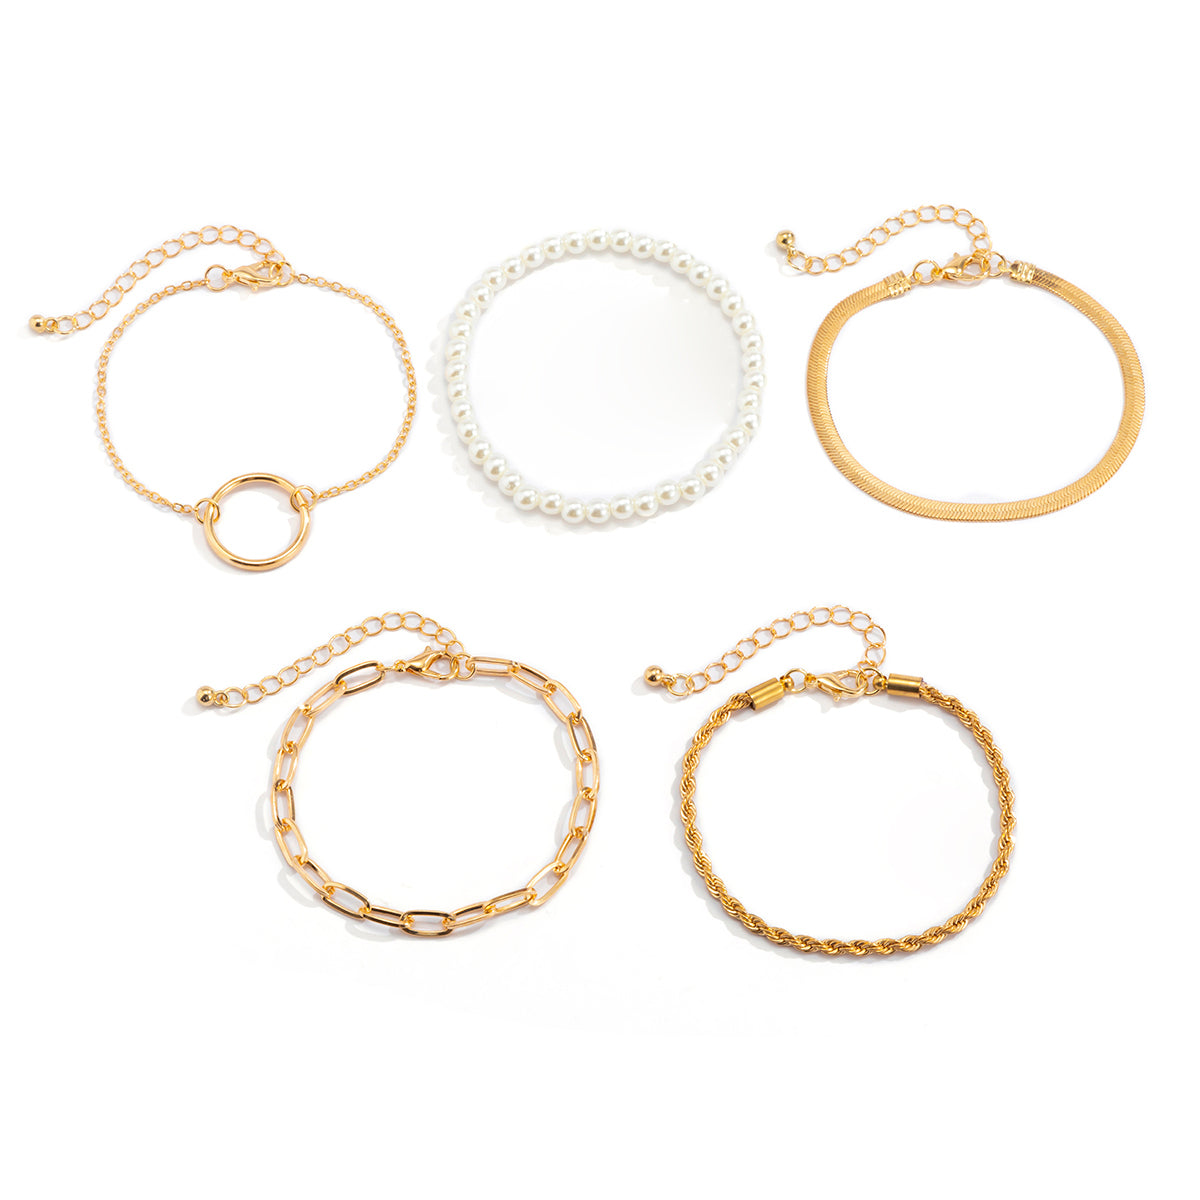 Damen Trendy Armband Set 5-Fach gold mit Perlen Schmuck einzel tragbar in minimalistischem Style minimal minimalistisch  in minimalistisch Style Perlenarmband Perlen Armband Perlenkette Perle Verstellbar Längenverstellbar